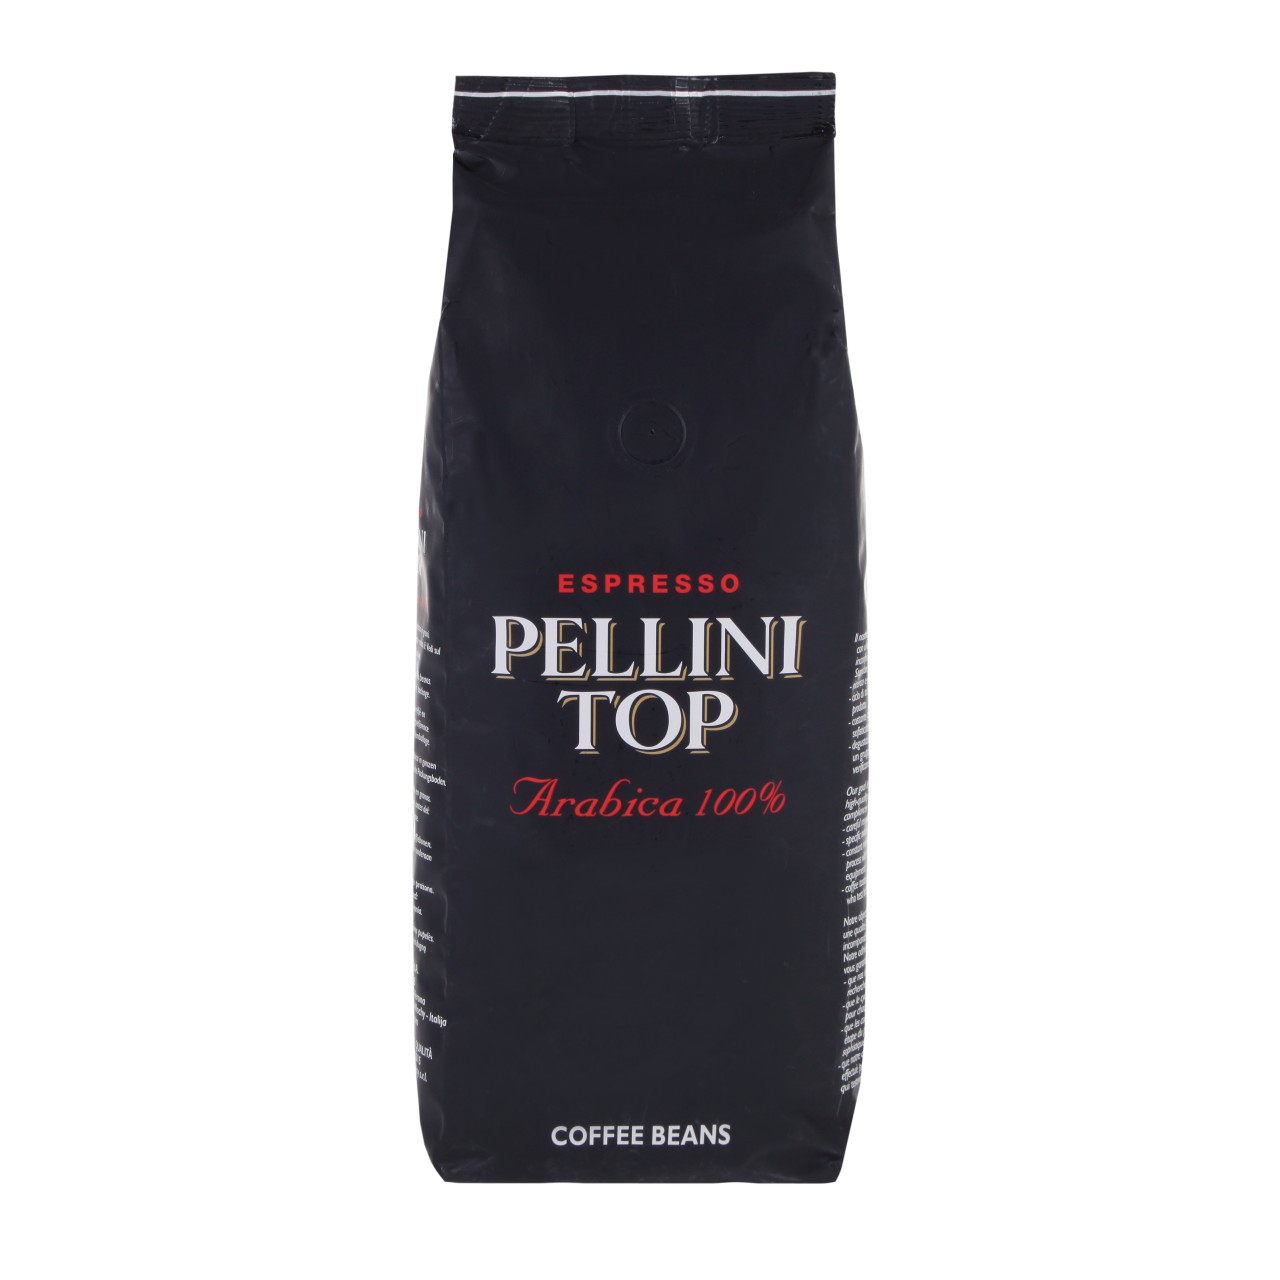 Pellini Top Class 100% Arabica